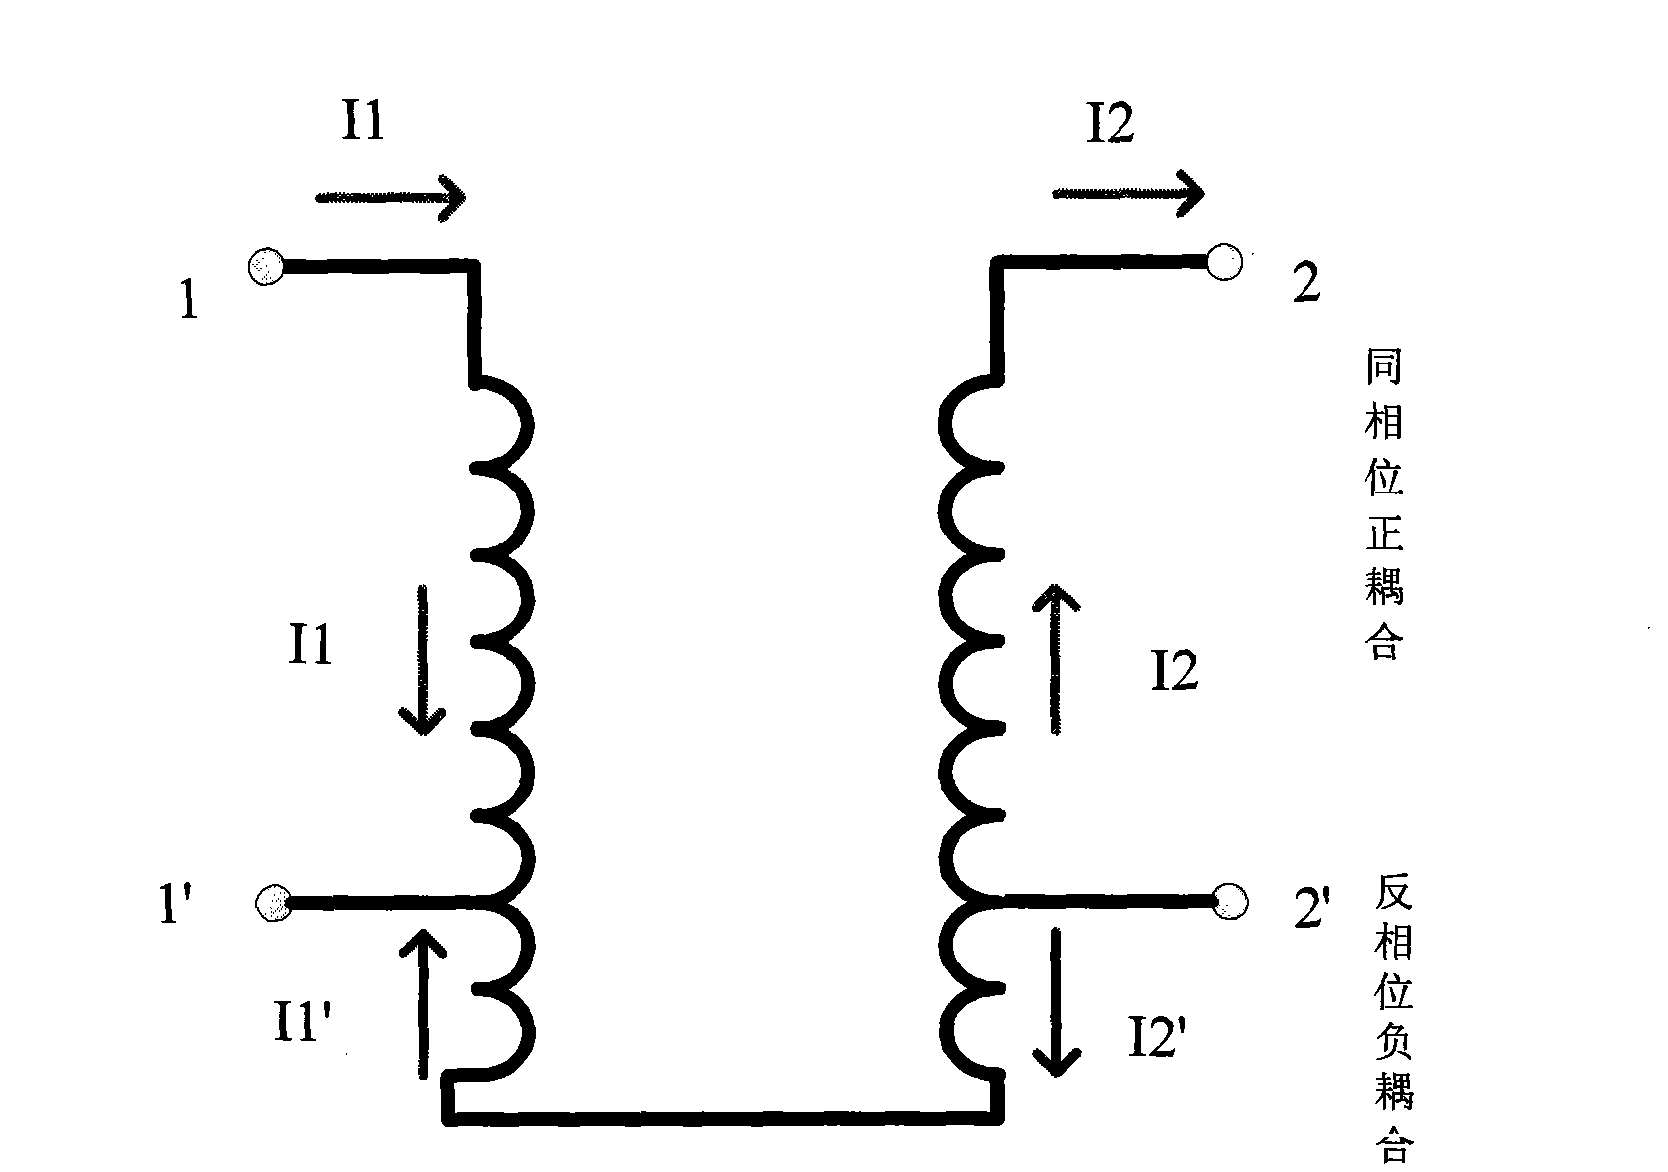 Antiphase coupling elliptic function spiral wave filter